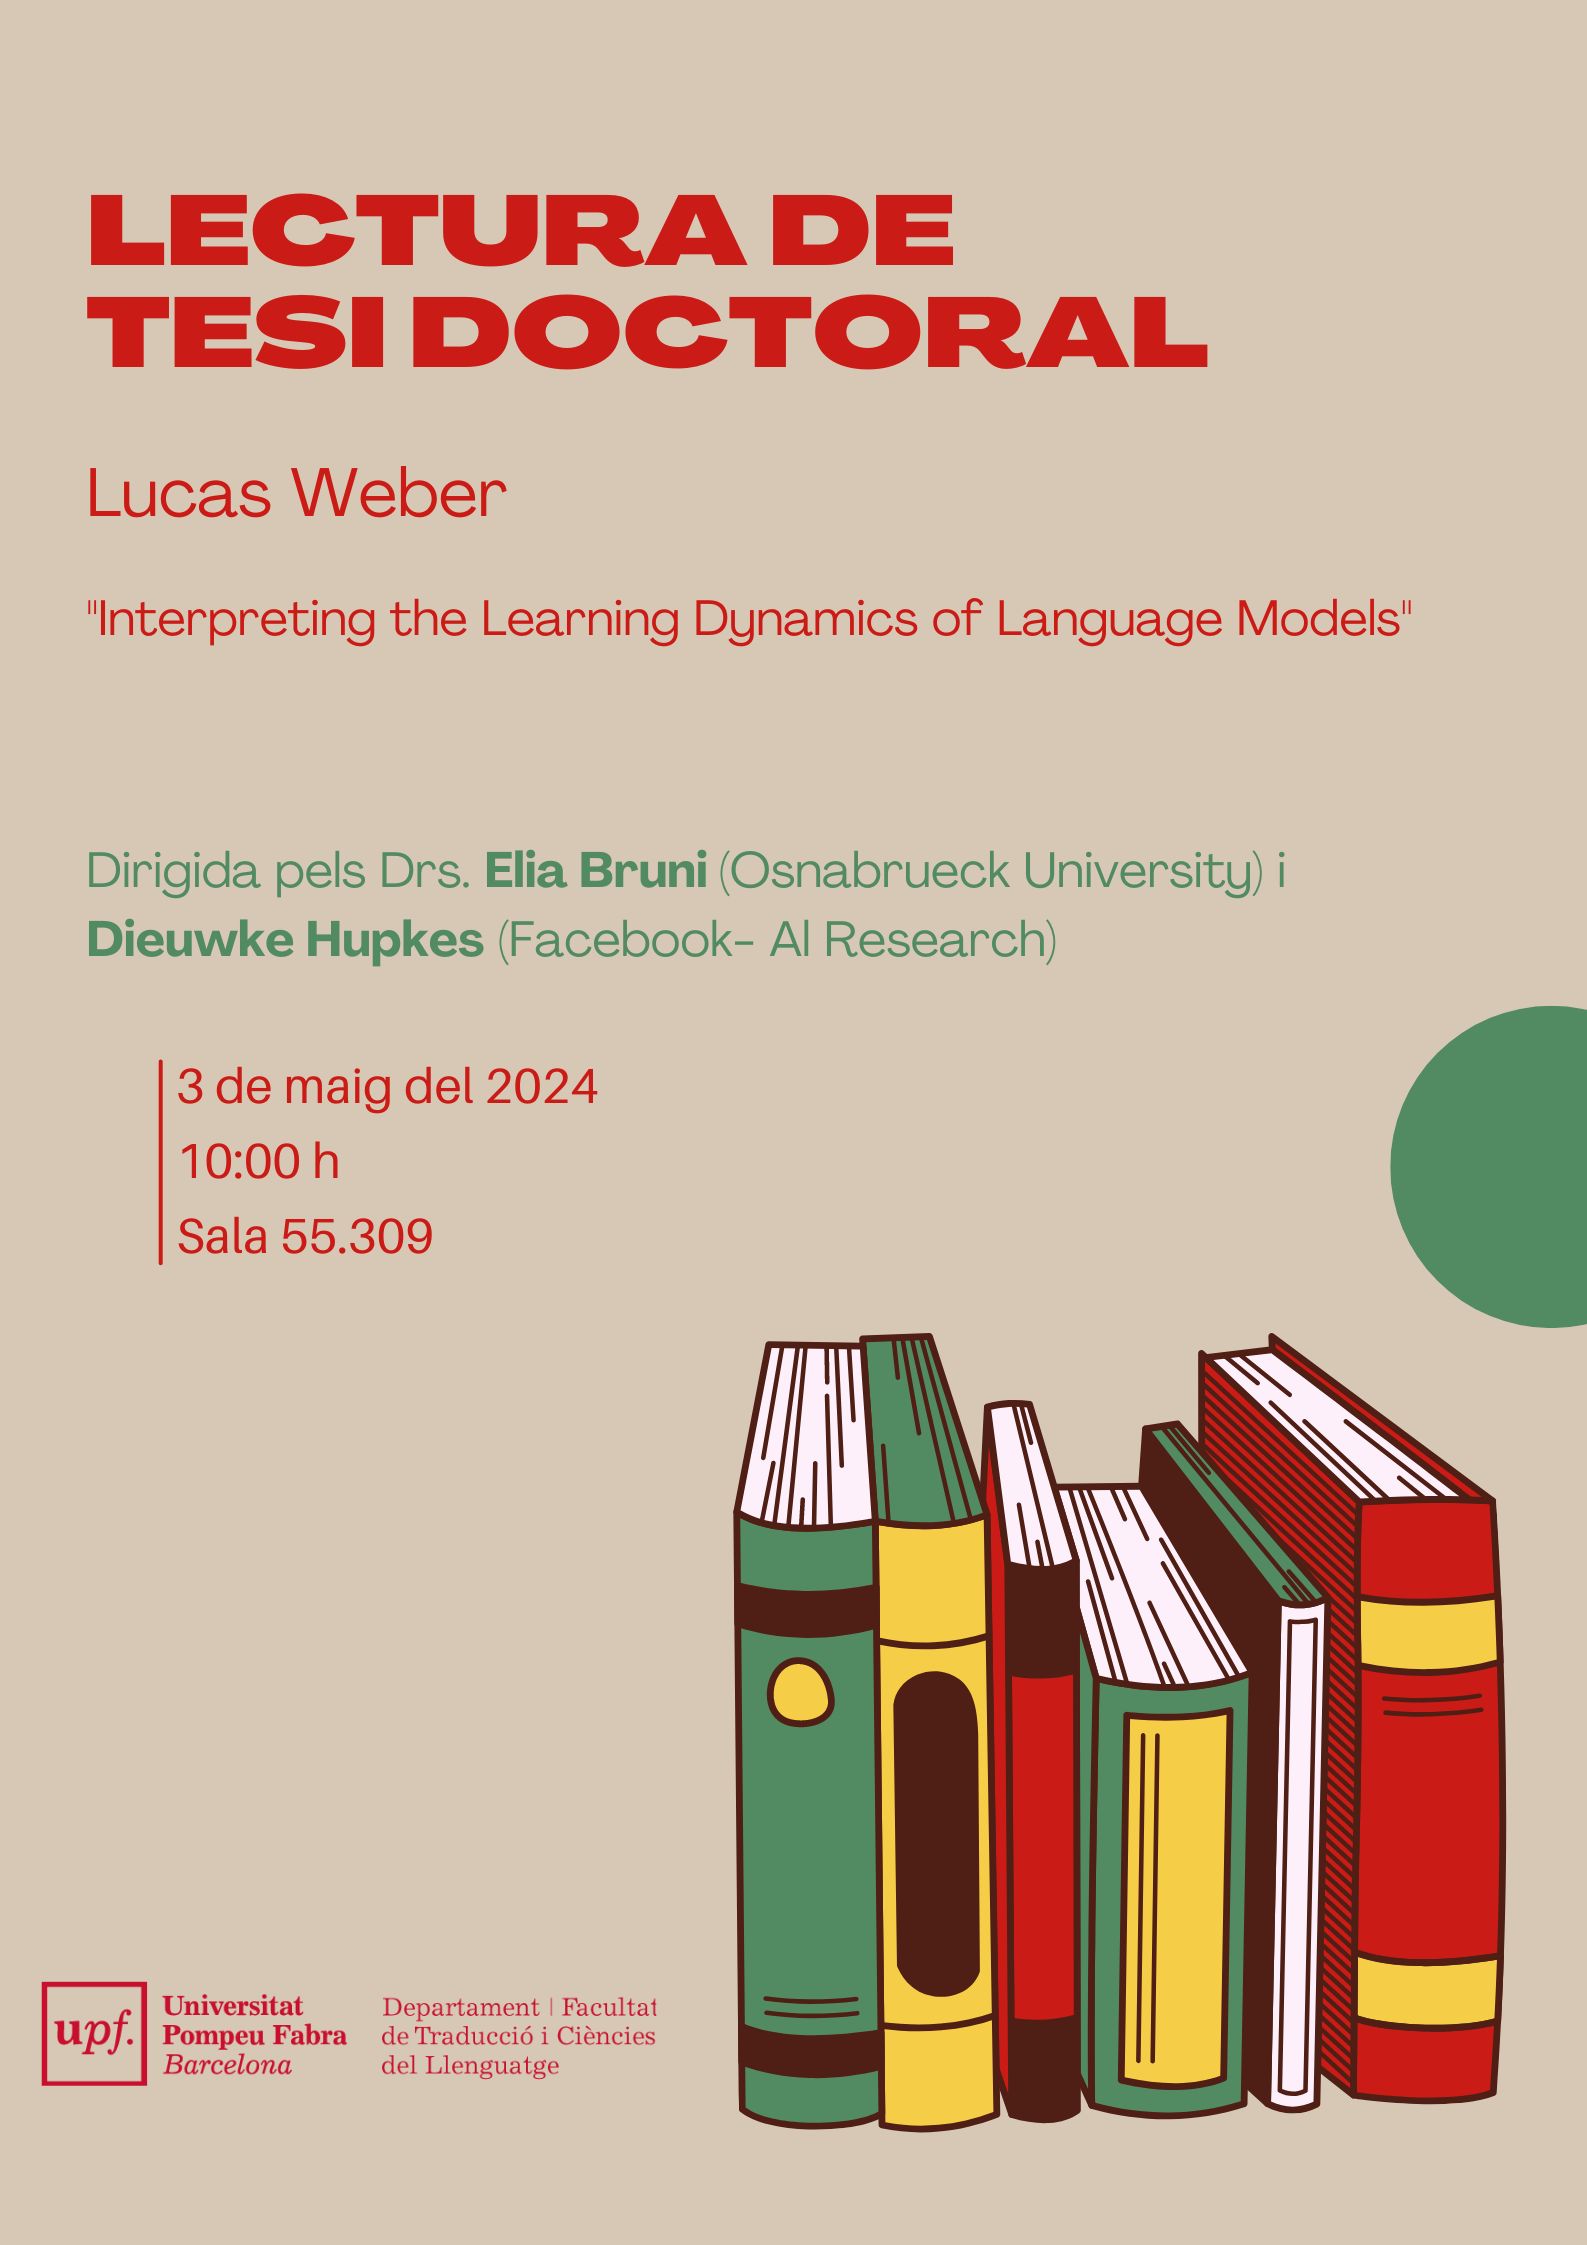 03/05/2024 Lectura de la tesi doctoral de Lucas Weber, a les 10.00 hores